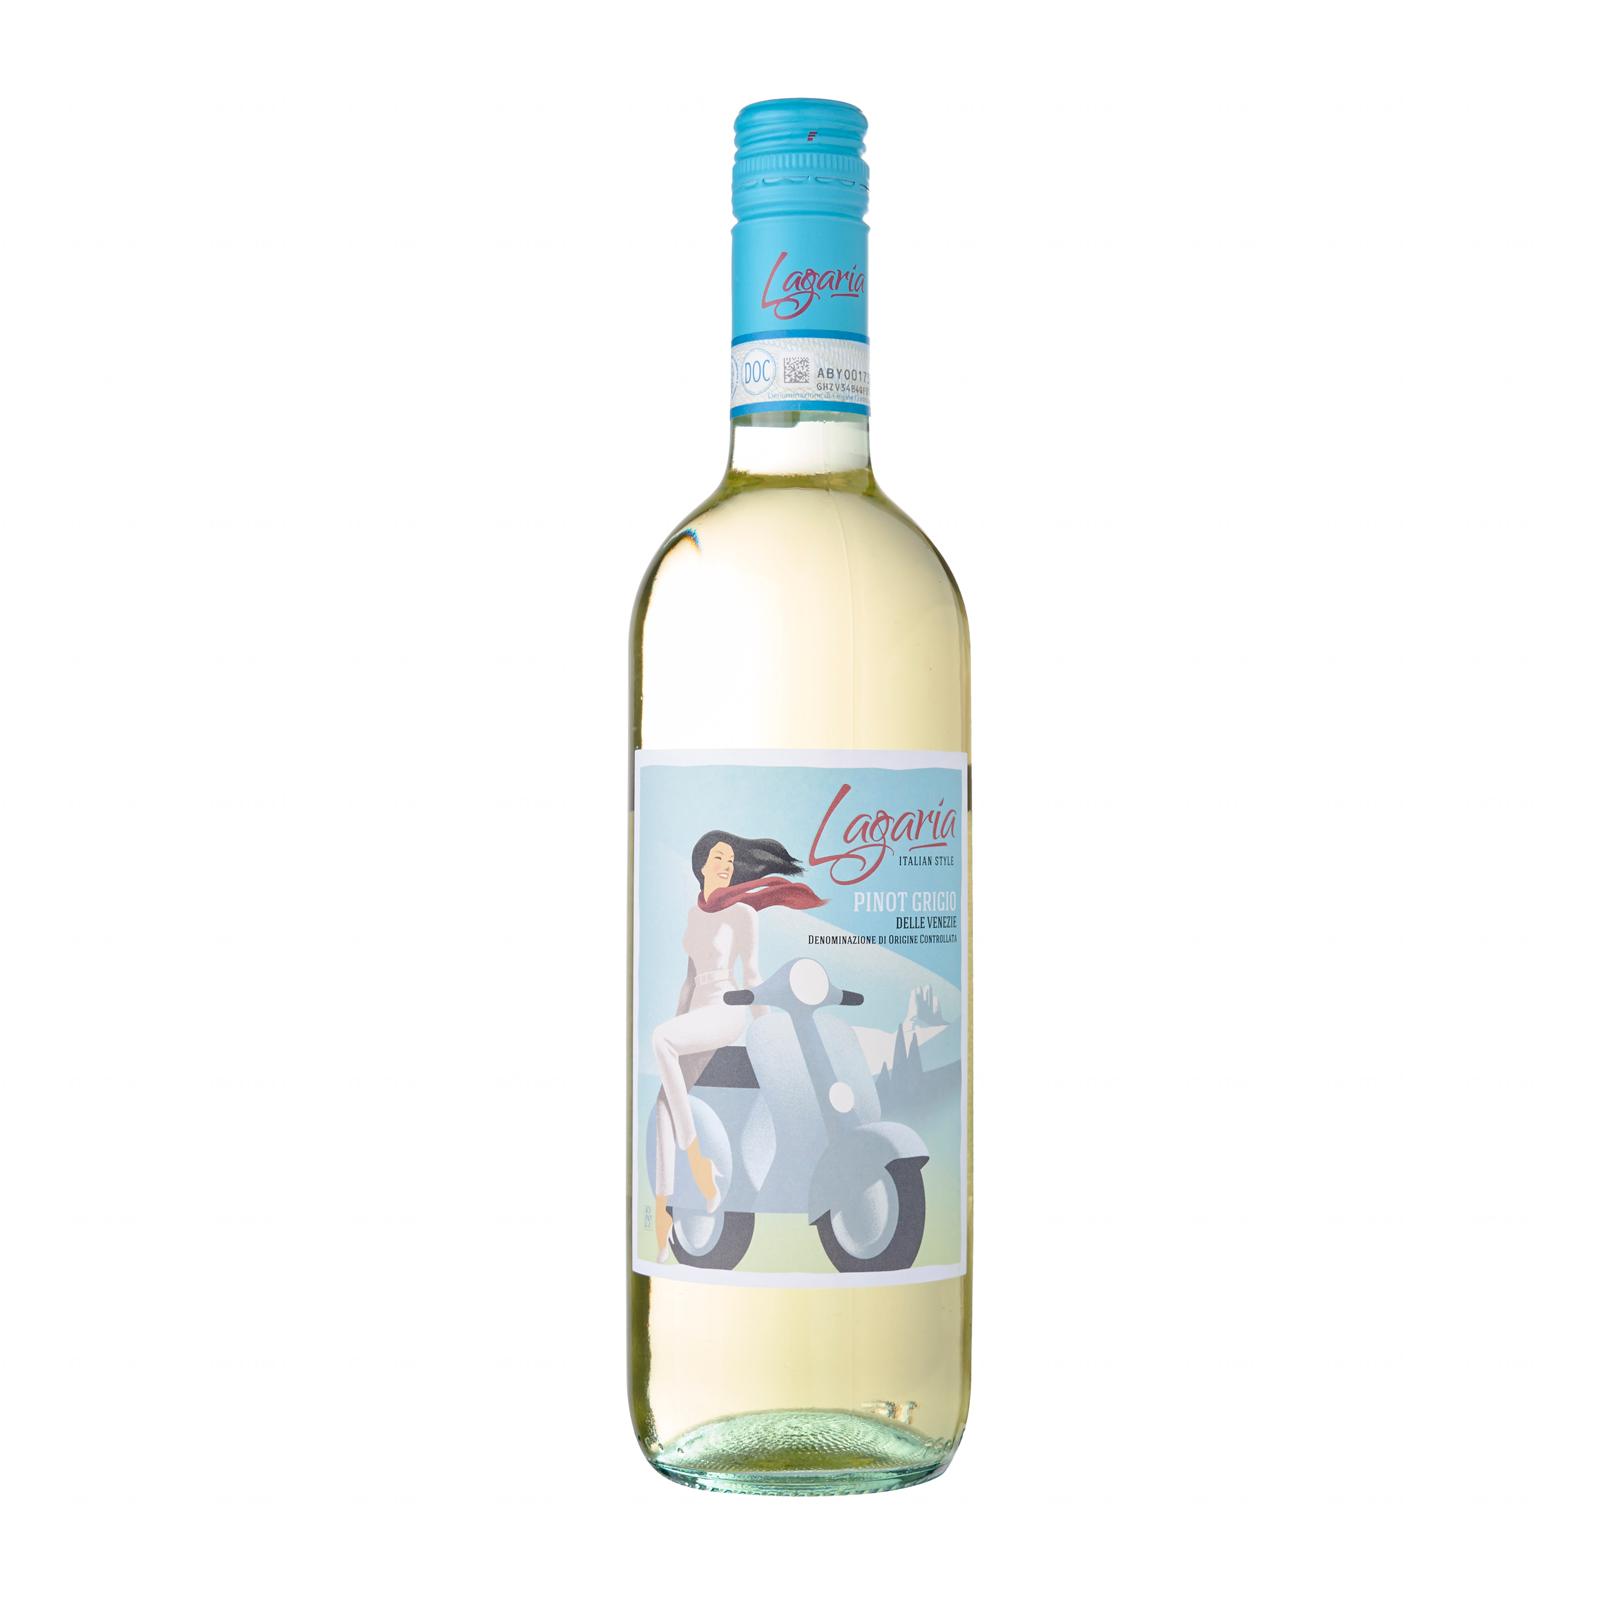 Lagaria Pinot Grigio Delle Venezie DOC 2019 White Wine – Italy